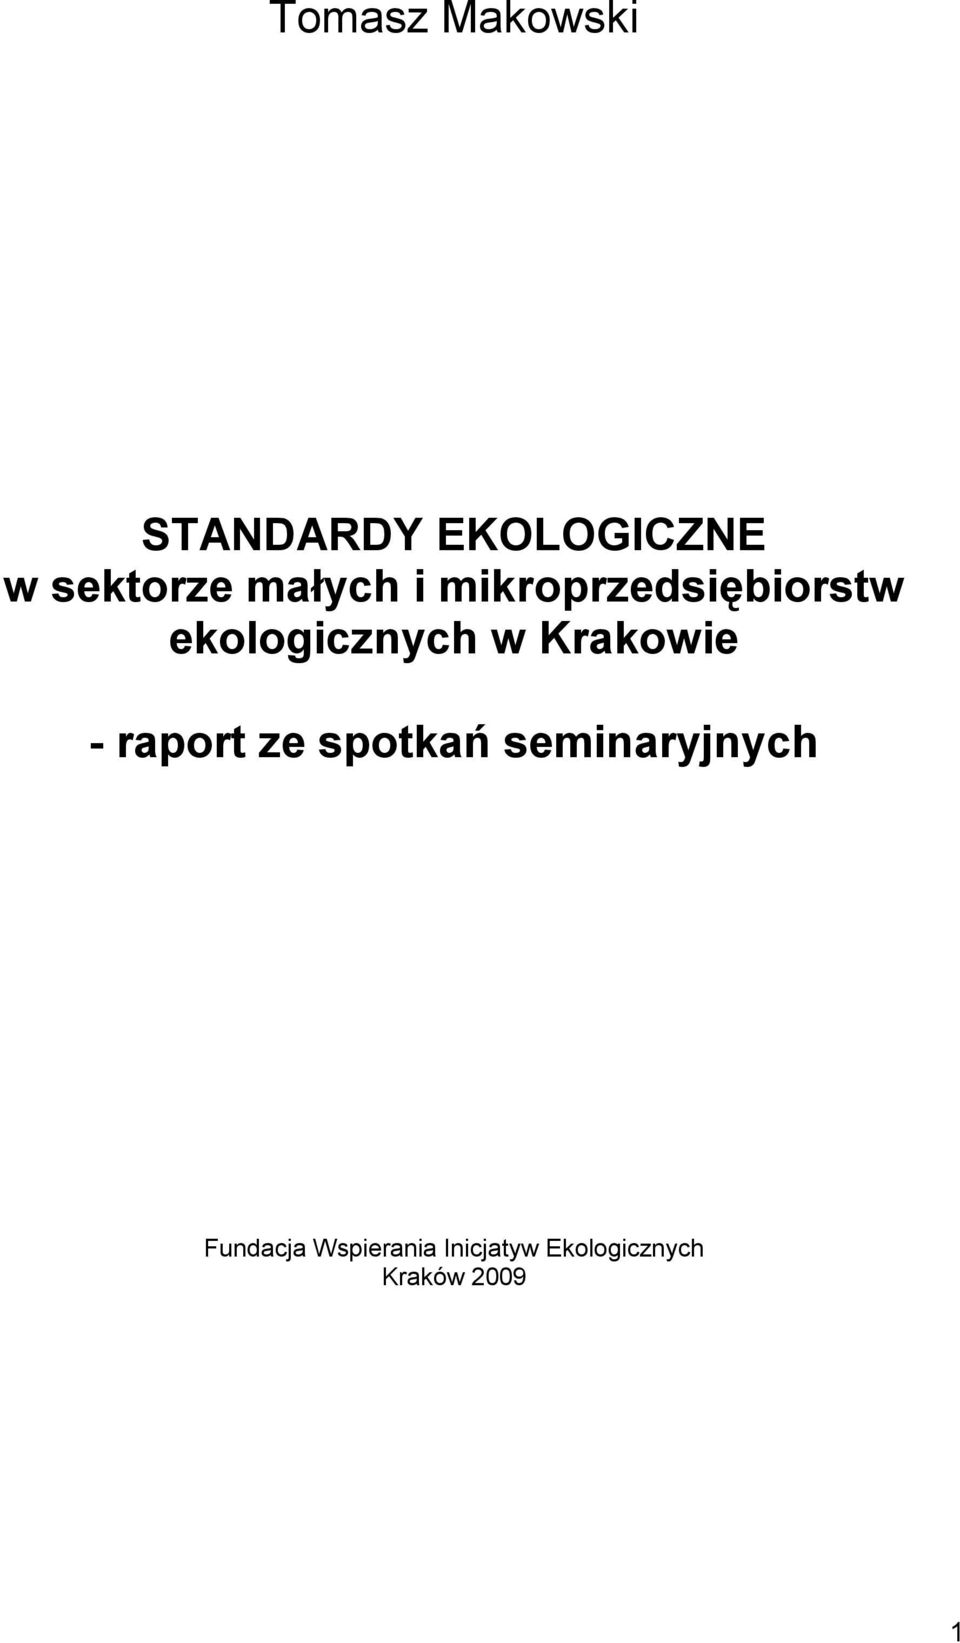 Krakowie - raport ze spotkań seminaryjnych